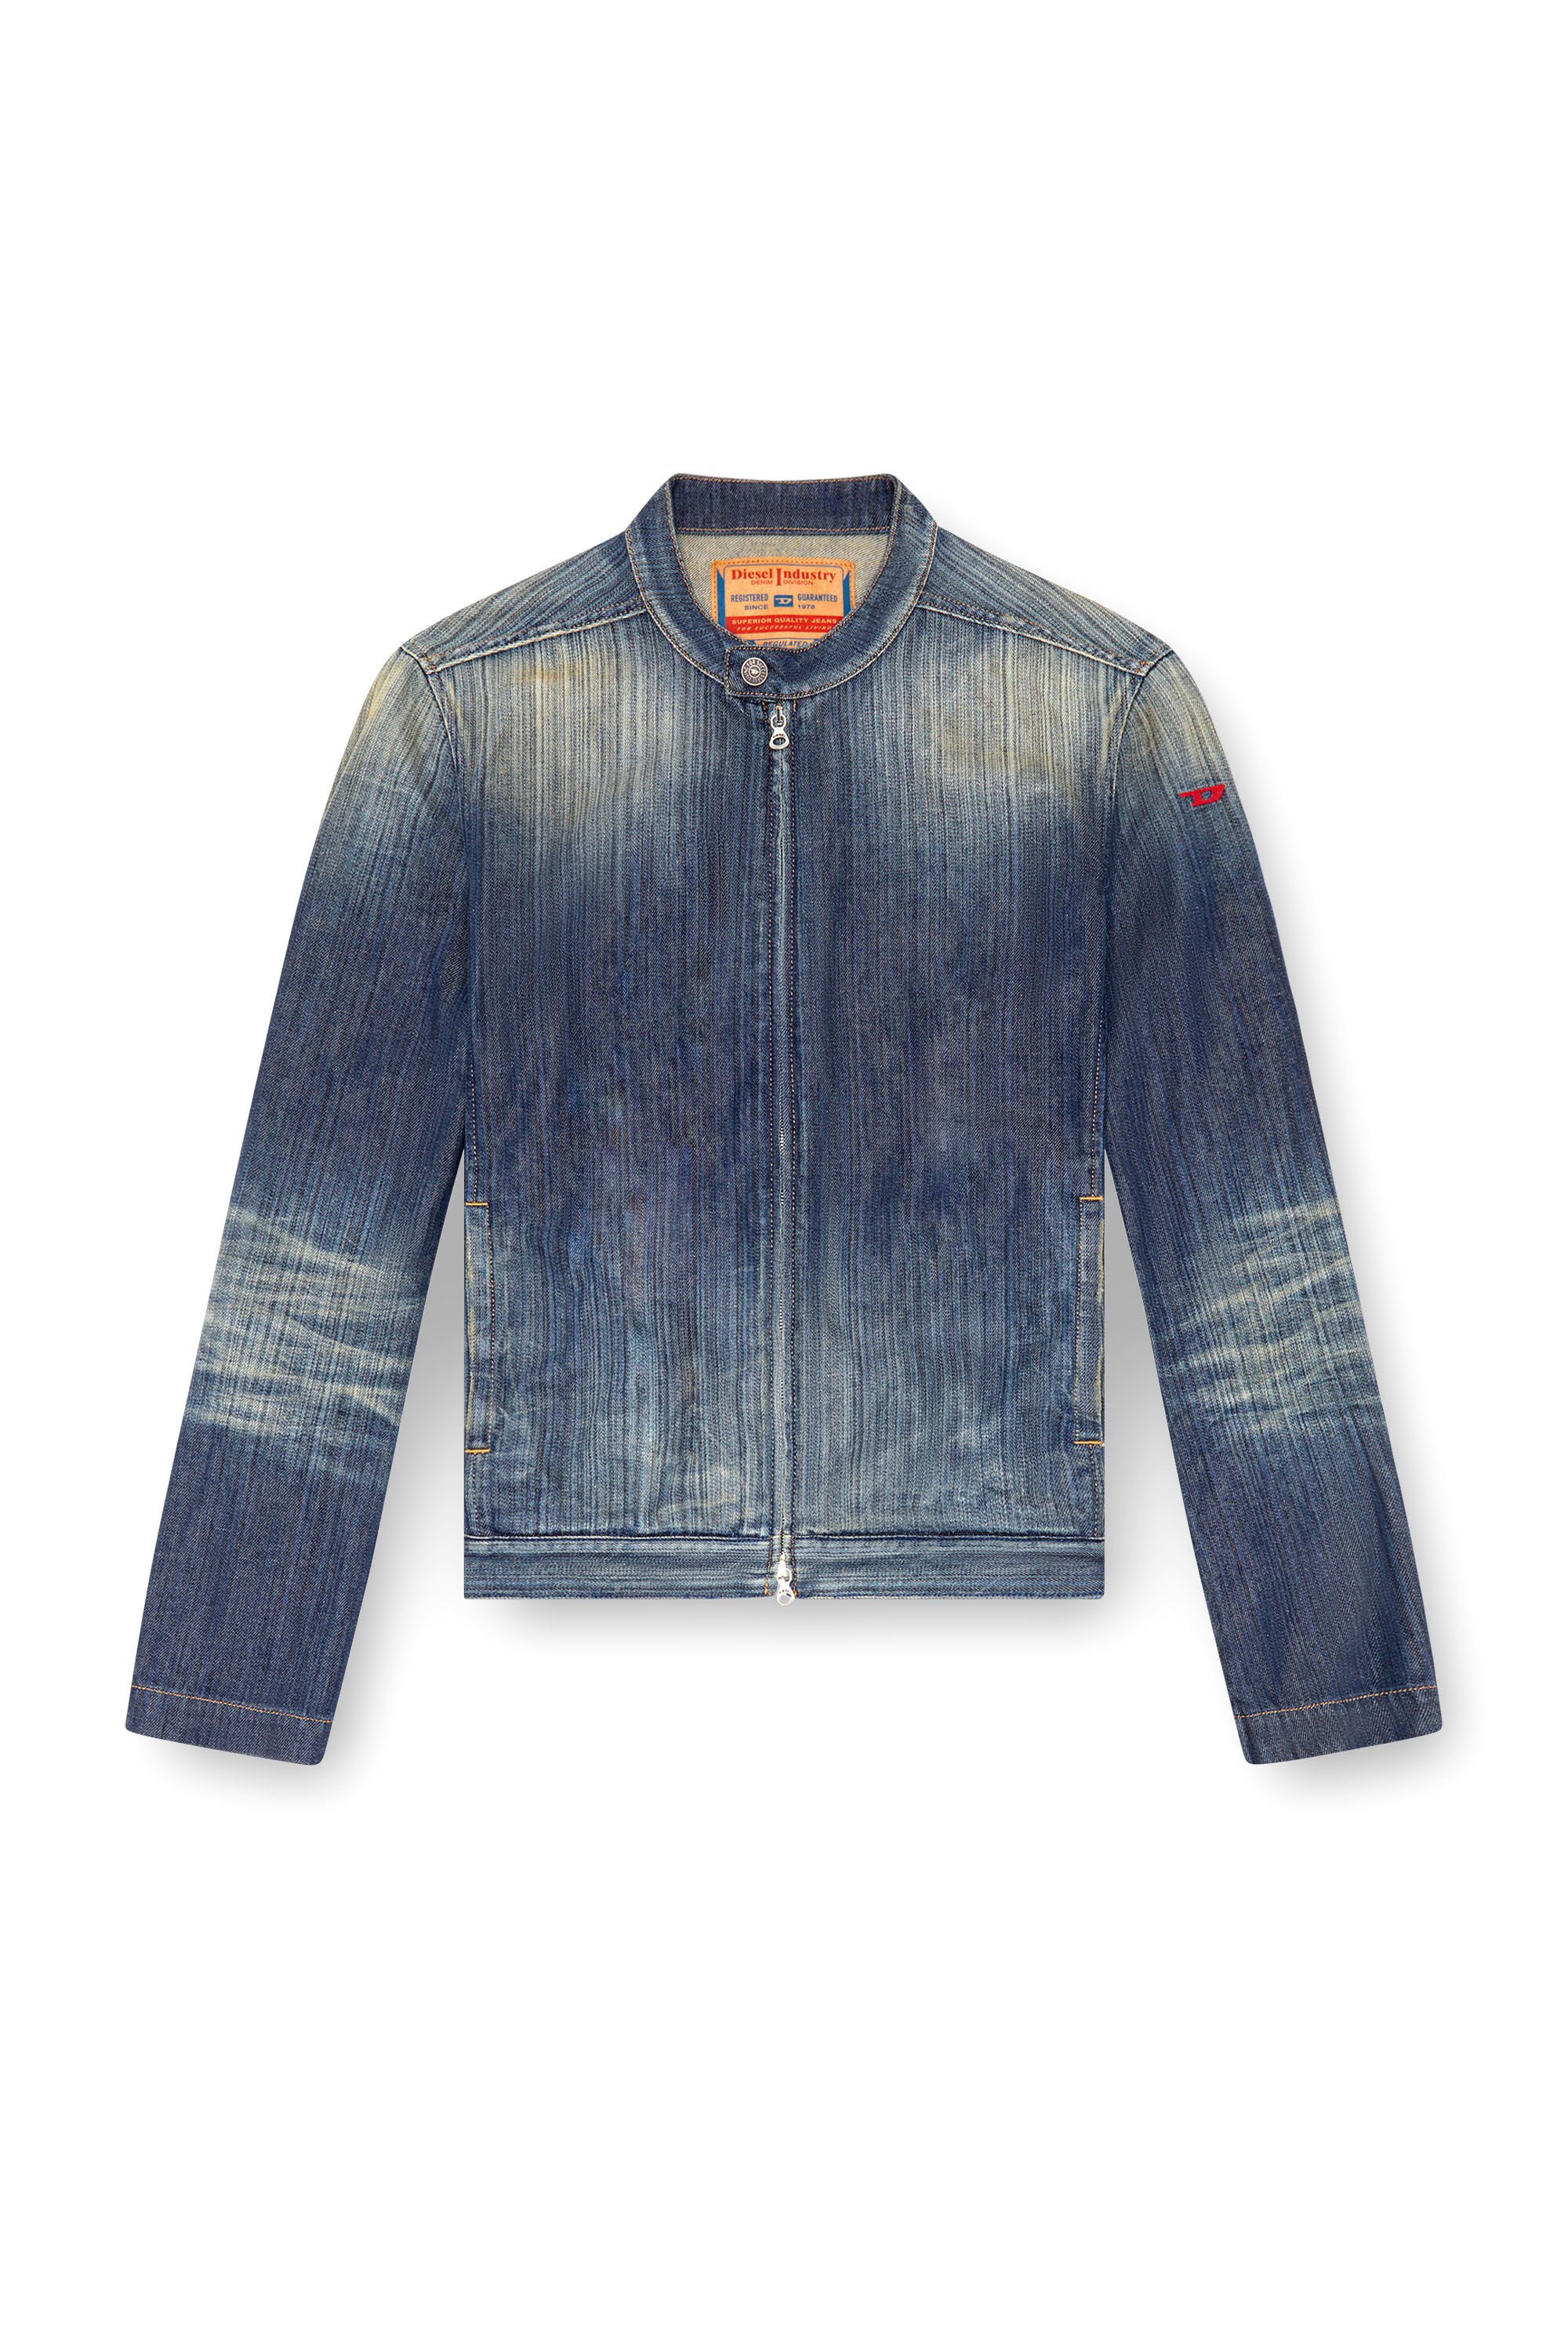 Diesel - D-GLORY, Man Moto jacket in streaky denim in Blue - Image 2